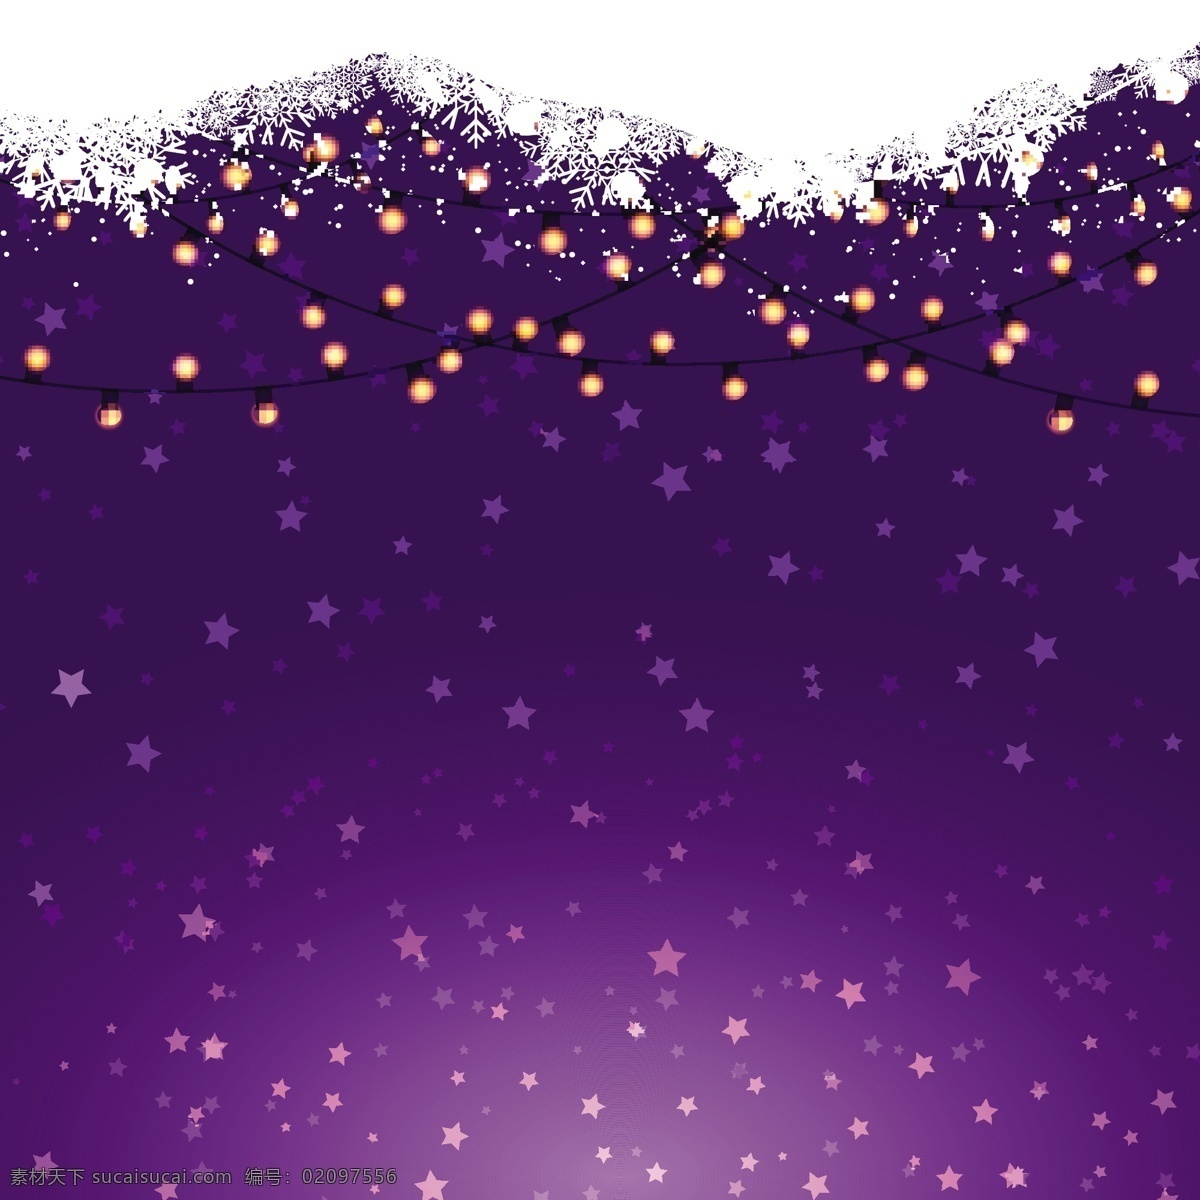 紫色 背景 圣诞 灯 圣诞节 抽象 几何 雪 圣诞快乐 冬天快乐 星星 圣诞背景 庆祝 雪花 节日 装饰 灯光 蓝色